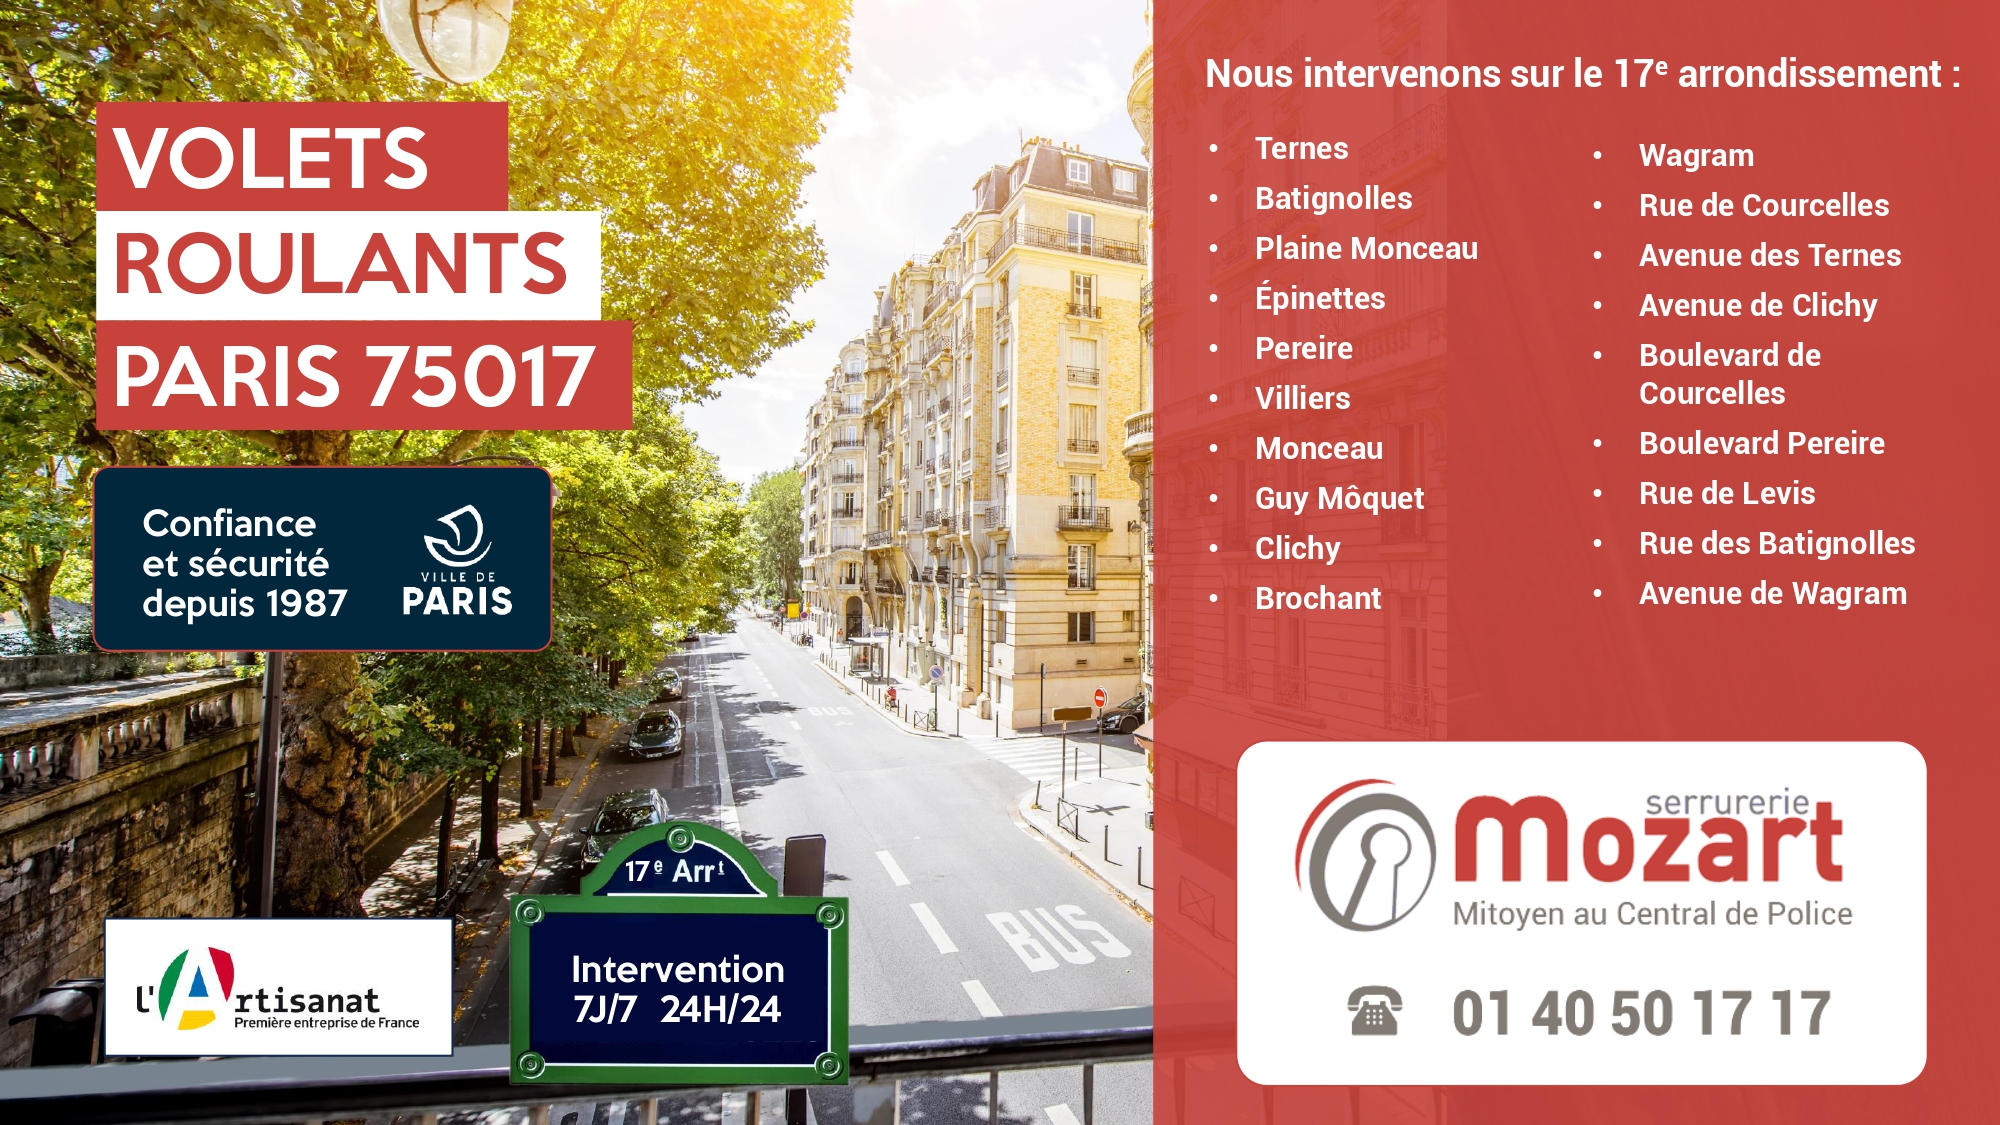 Serrurerie Mozart - Experts en réparation de volets roulants - 17ème arrondissement - 01 40 50 17 17